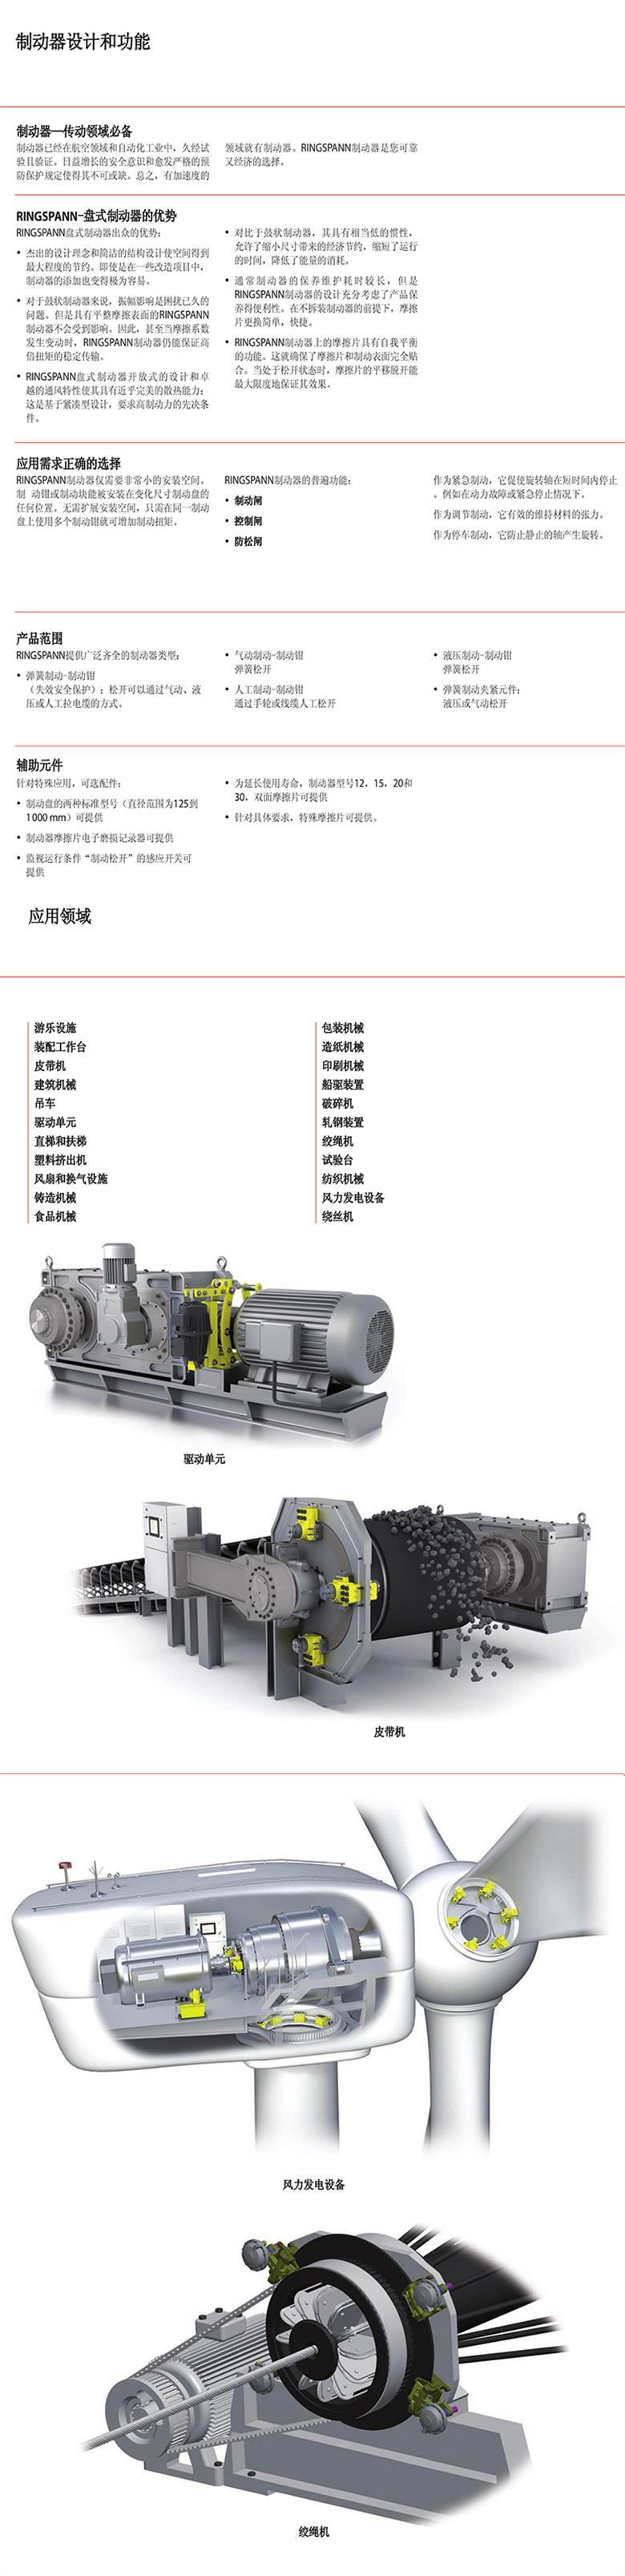 DH 020 030 035 FHM/FHA原厂供应德国RINGSPANN液压盘式制动器(图1)